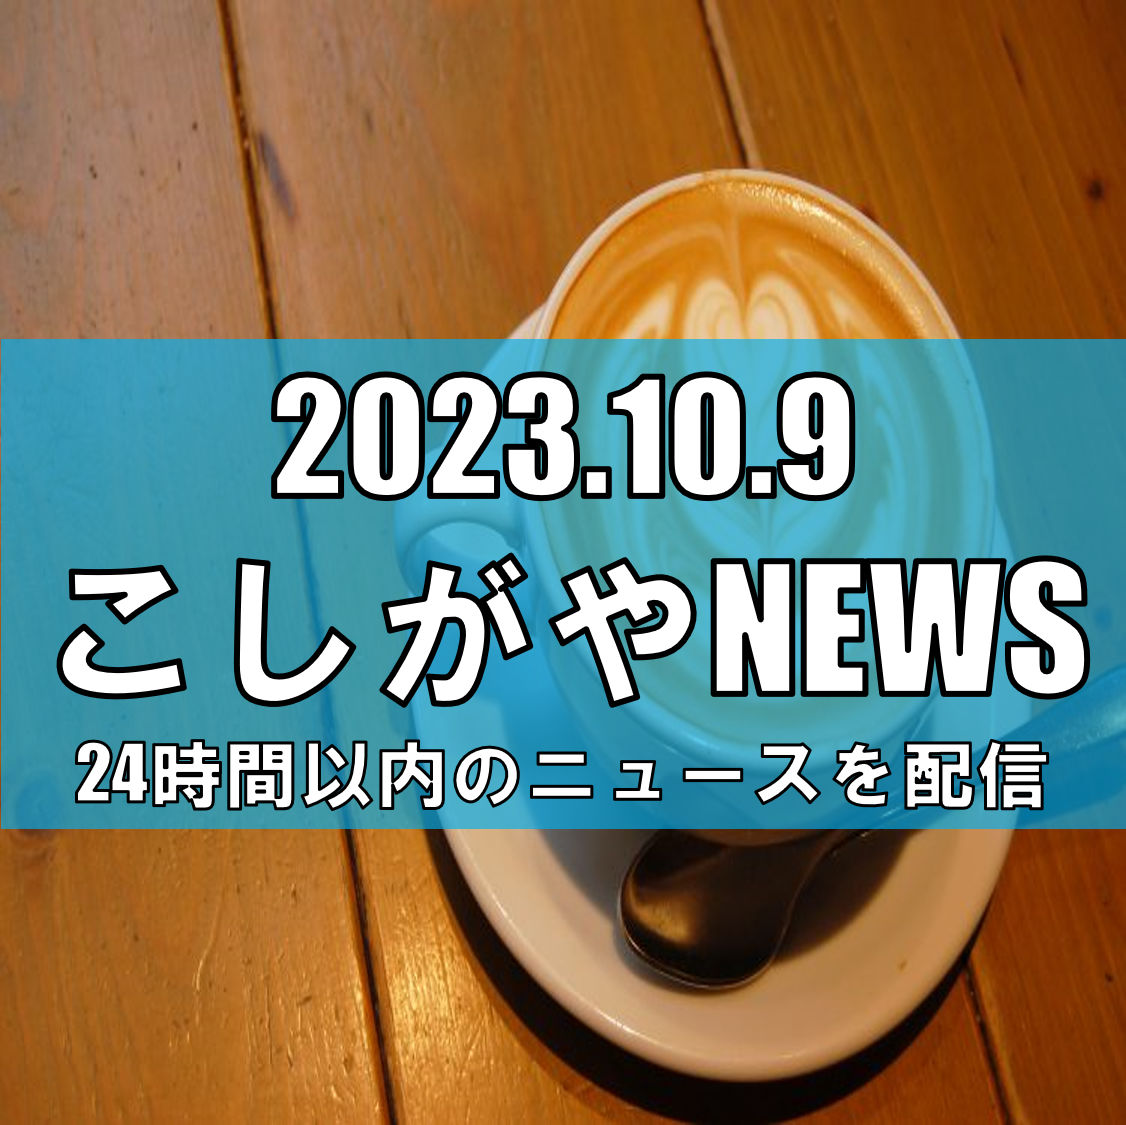 「きつ音」の若者がカフェ店員に挑戦、埼玉で初開催【越谷ニュース】